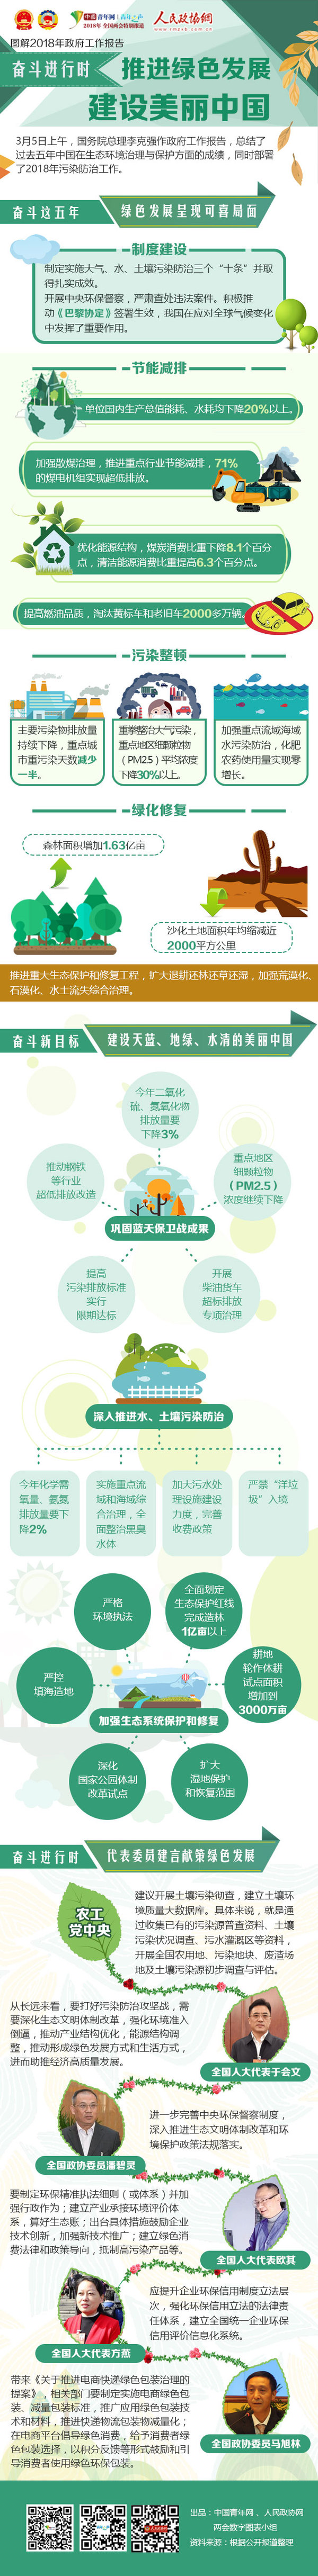 【奋斗进行时】推进绿色发展，建设美丽中国！ - 政协网